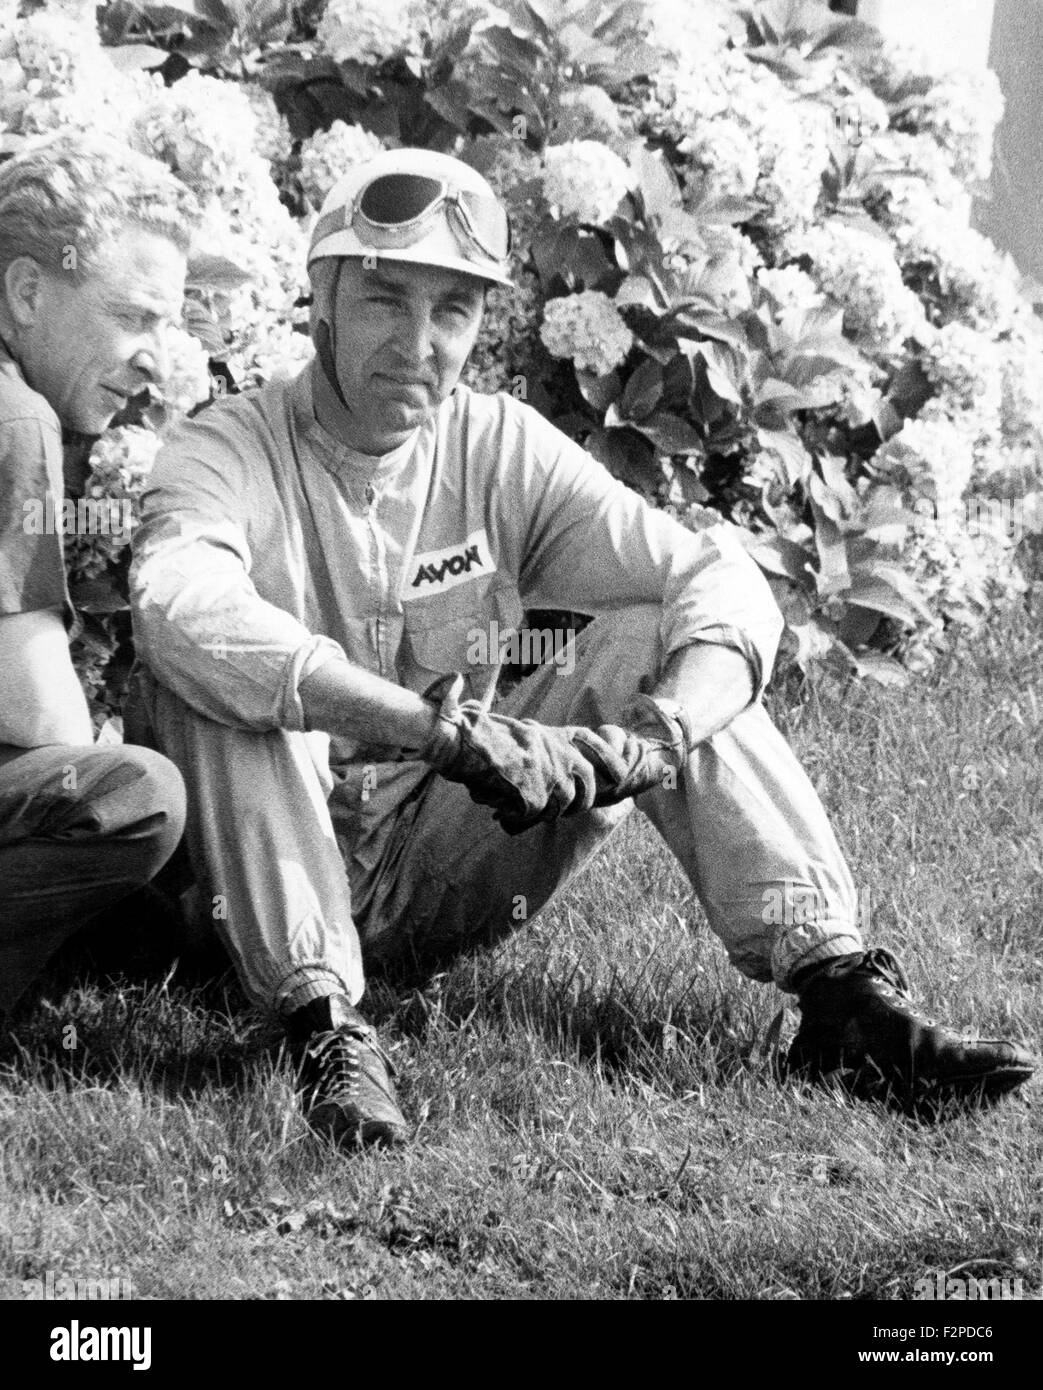 Roy Salvadori and John Coombs at Goodwood 1950s Stock Photo